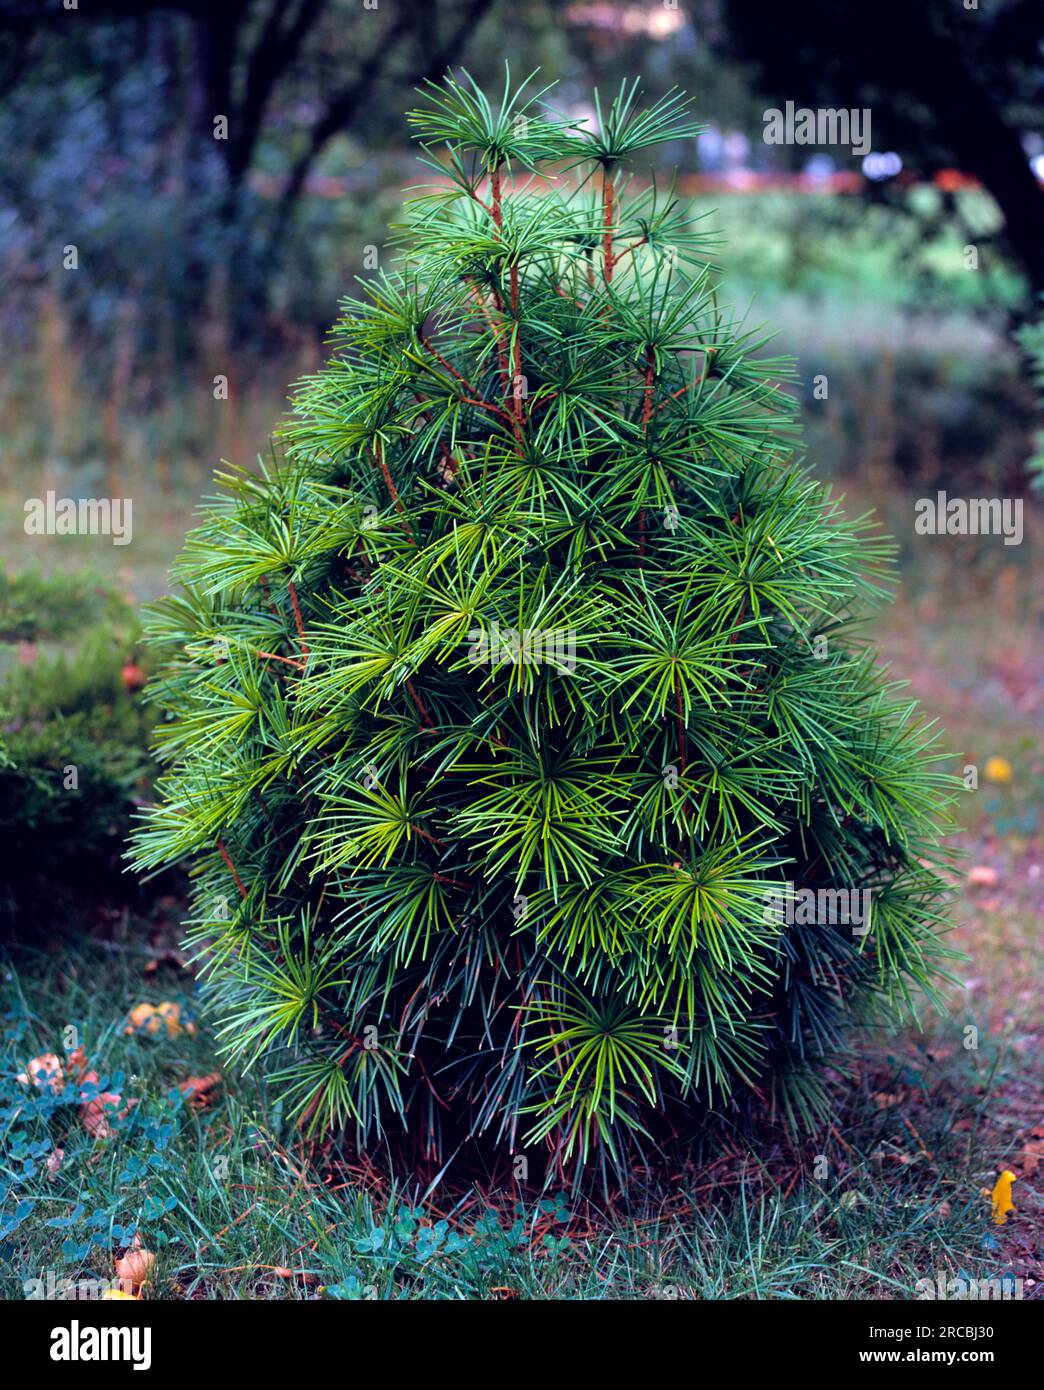 Japanese umbrella fir (Sciadopytis verticillata) Stock Photo